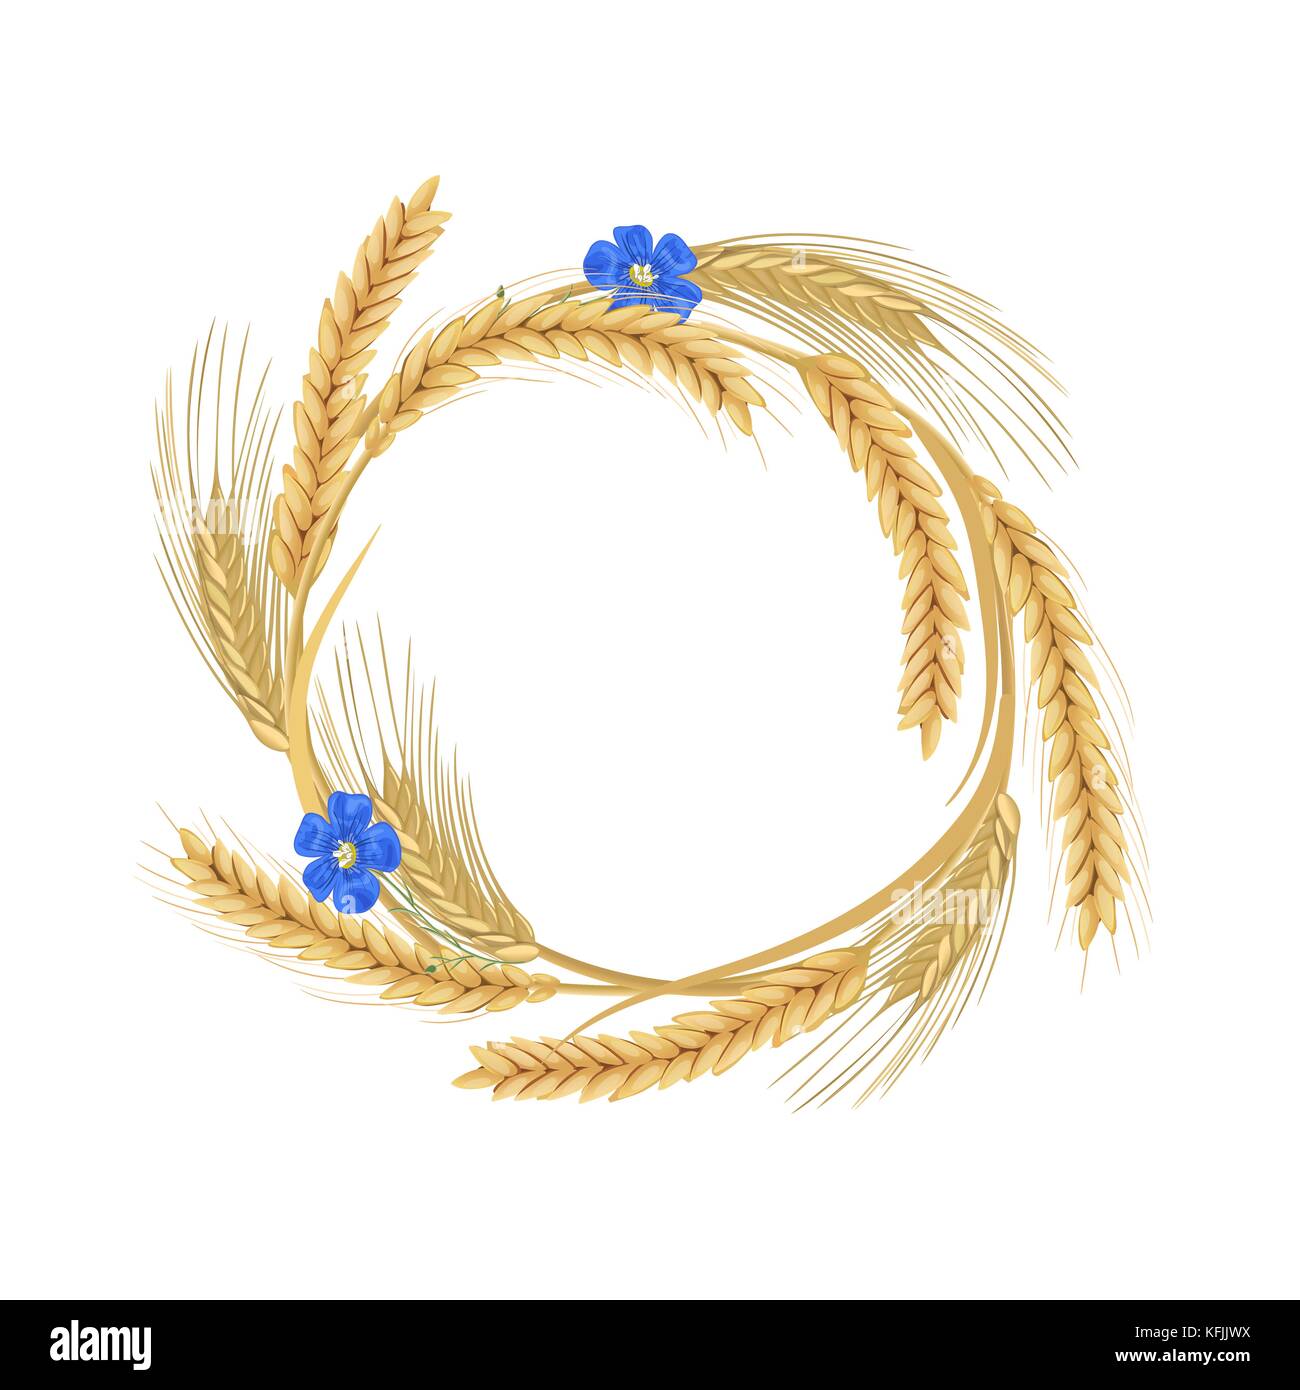 Gerbe de fleurs de lin, de blé, orge, avoine et seigle crampons. Des céréales avec les oreilles, et l'espace libre Illustration de Vecteur